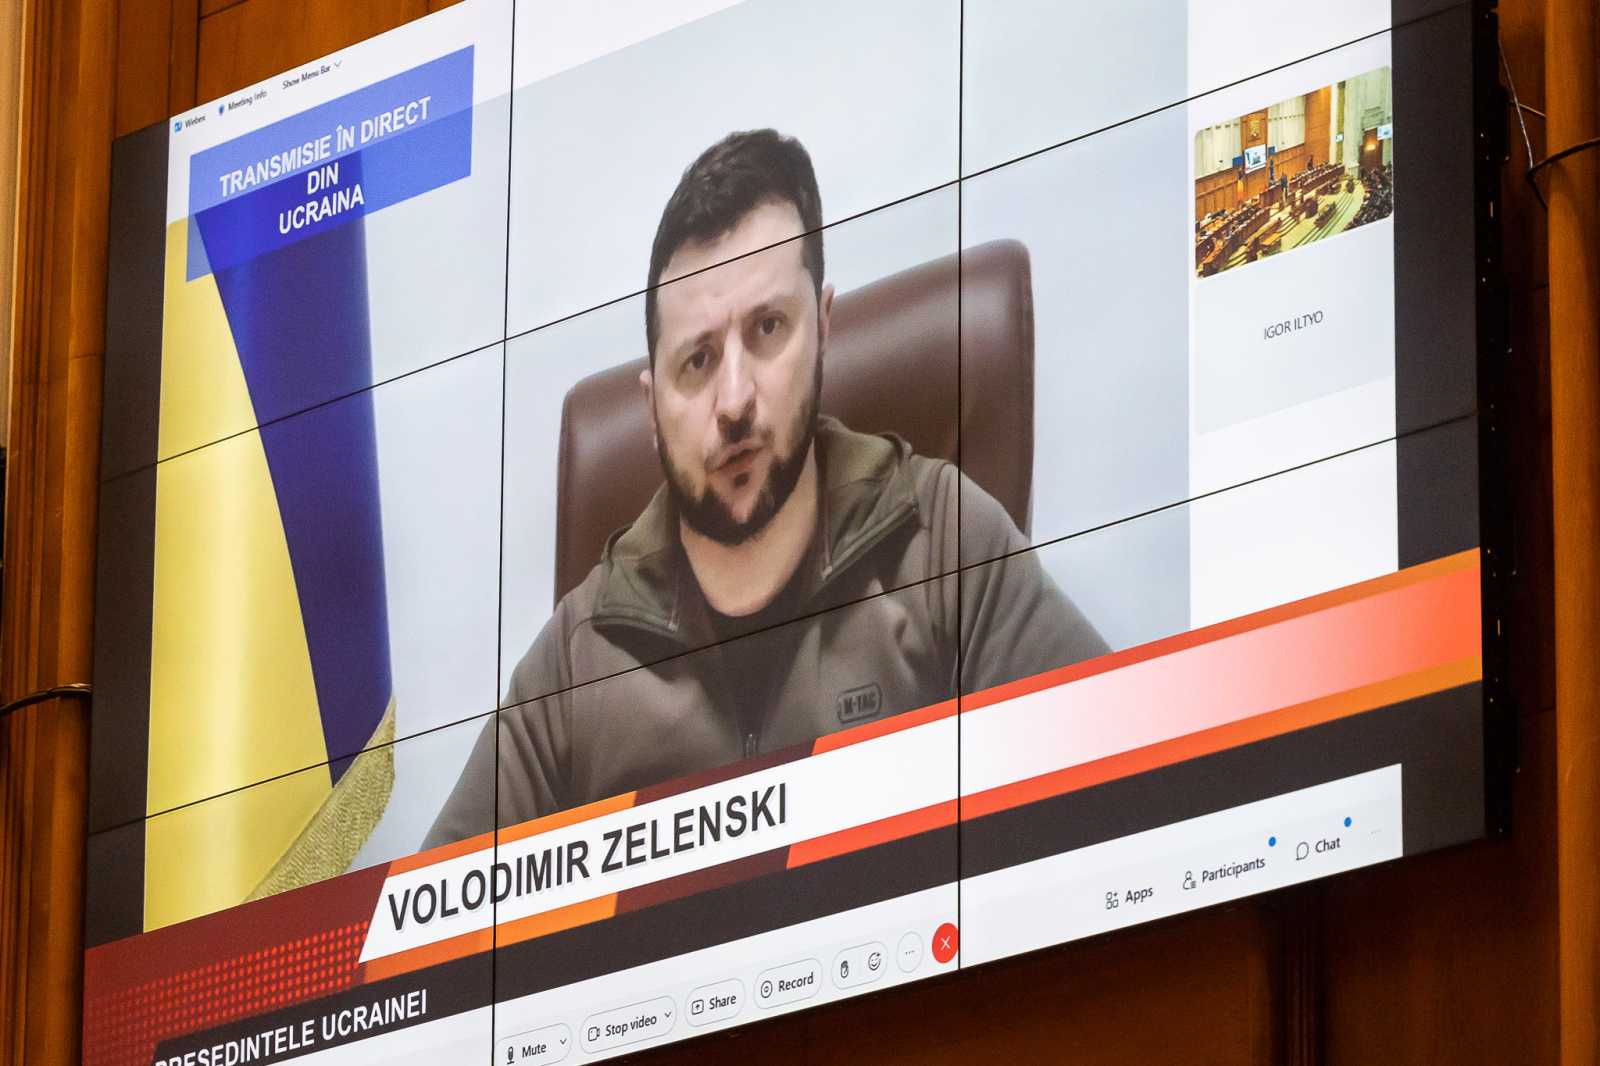 Volodimir Zelenszkij április elején, a román parlementben internetes távkapcsolással mondott beszéde közben | Fotó: gov.ro